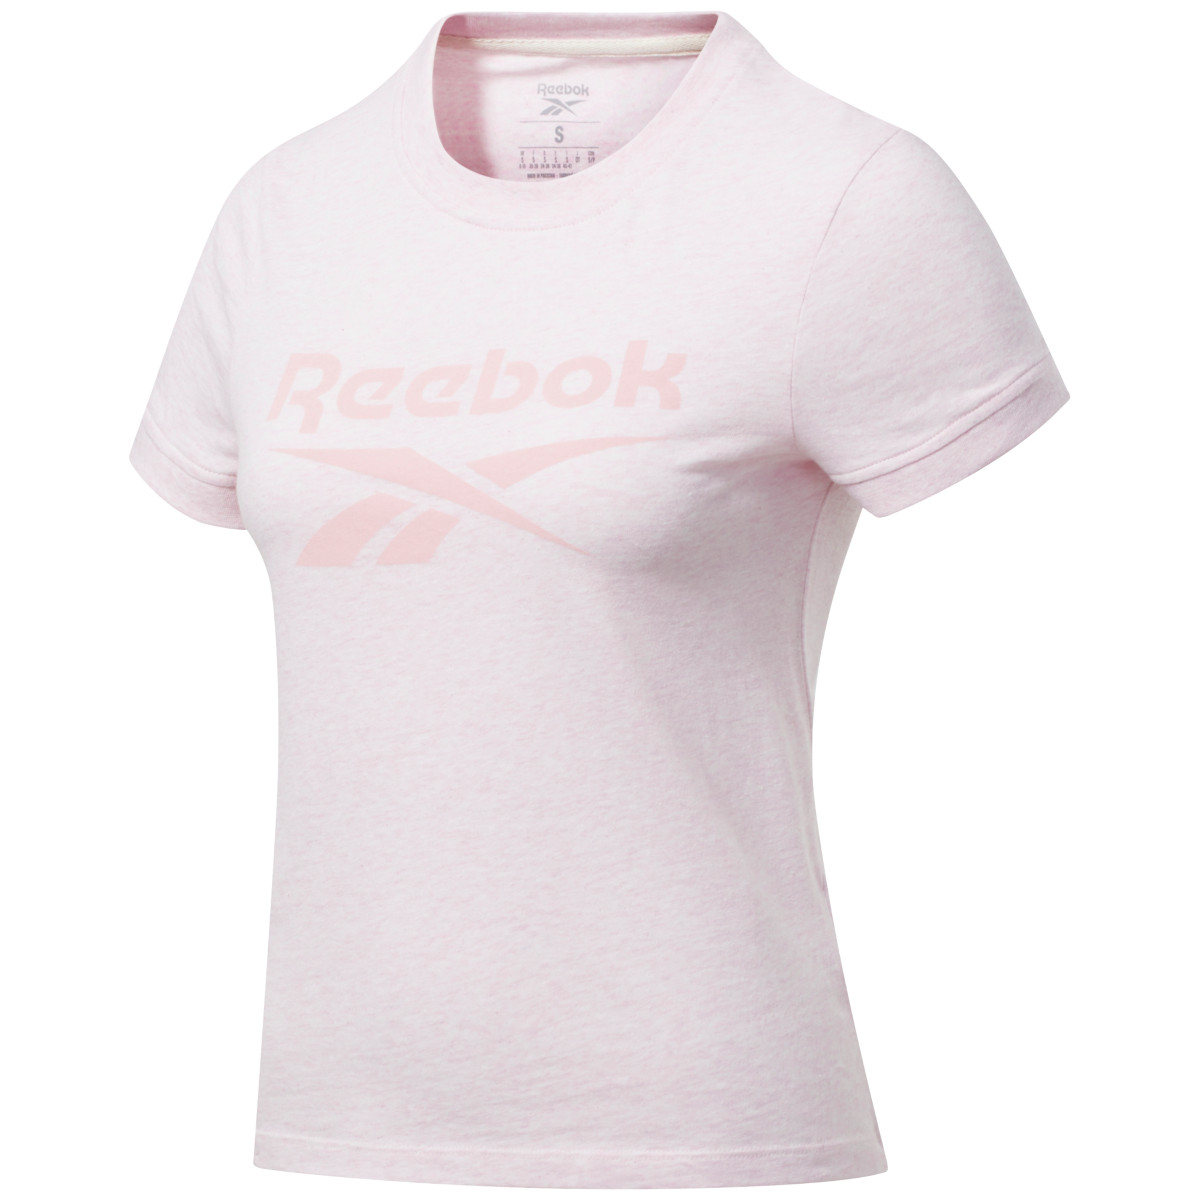 Produktbild von Reebok Frauen Training Essentials Textured Logo T-Shirt - glass pink melange FU2240